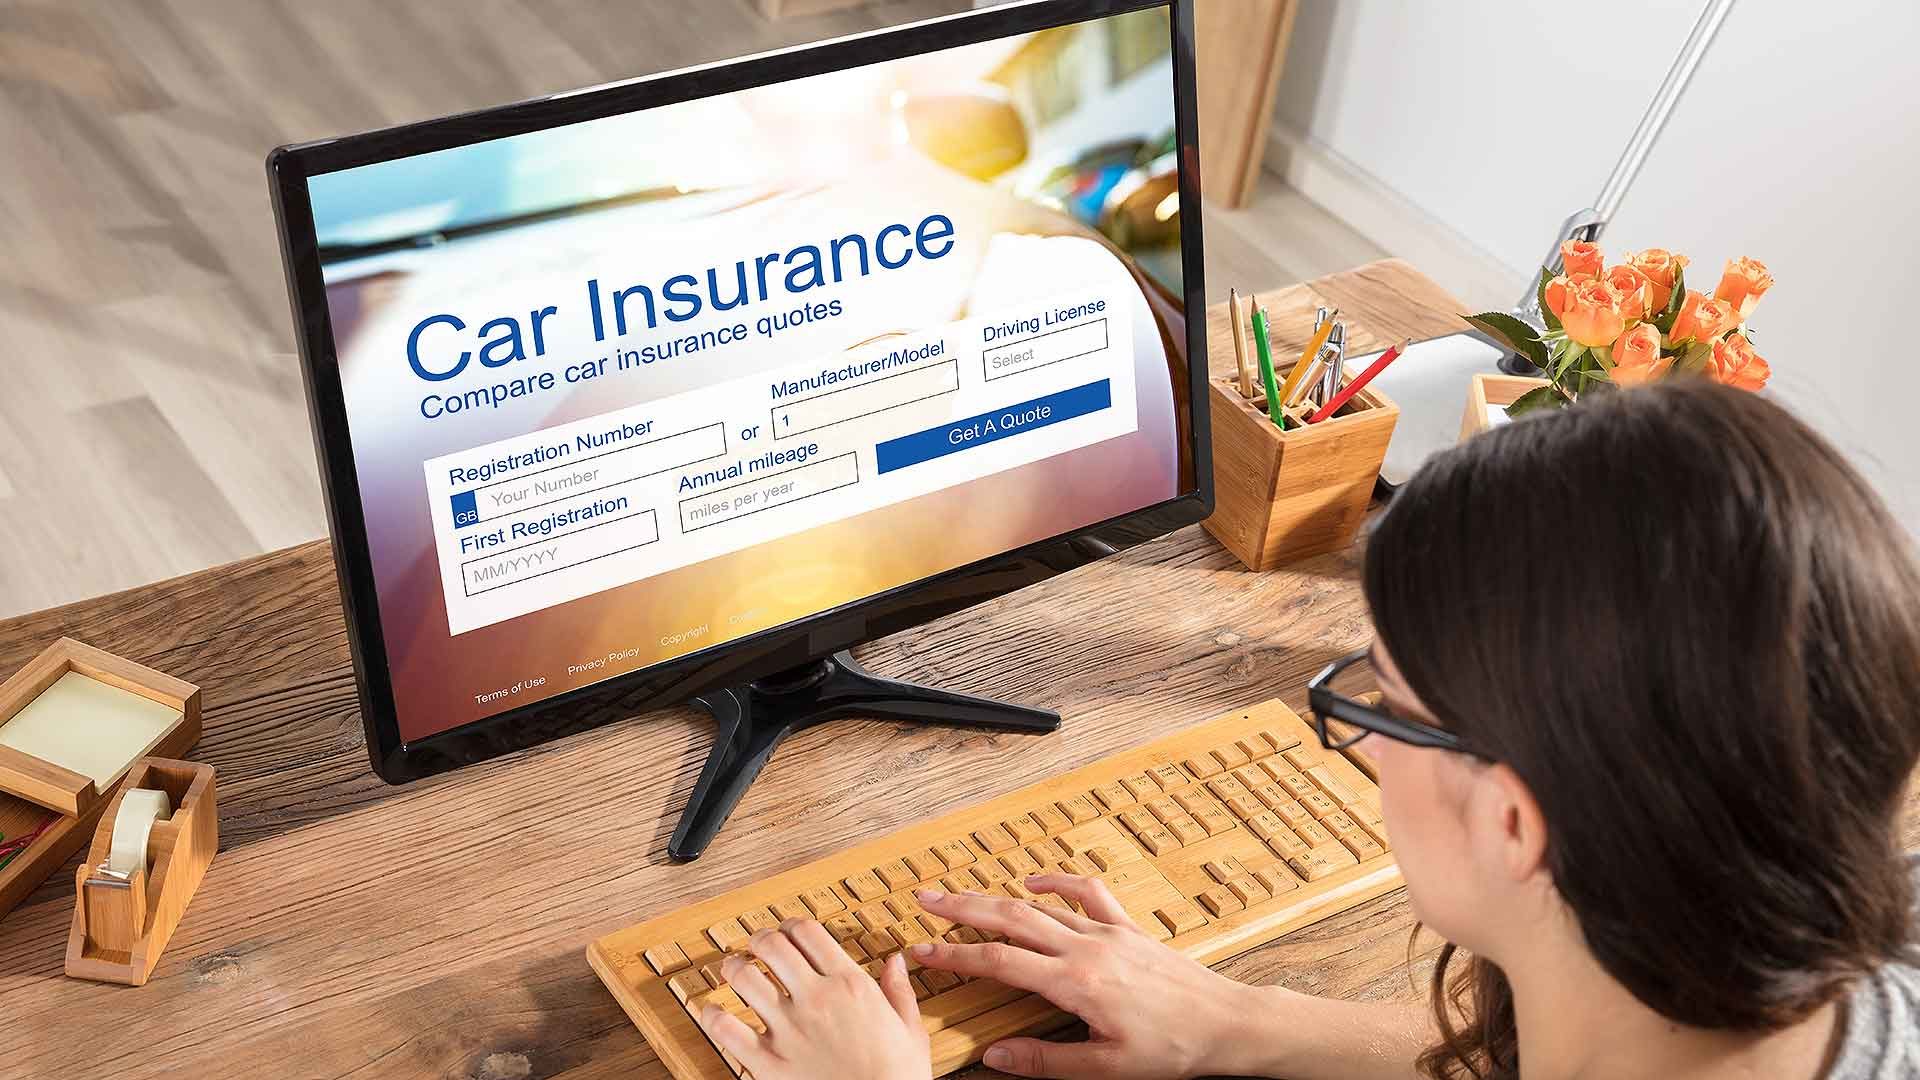 Car insurance comparison site